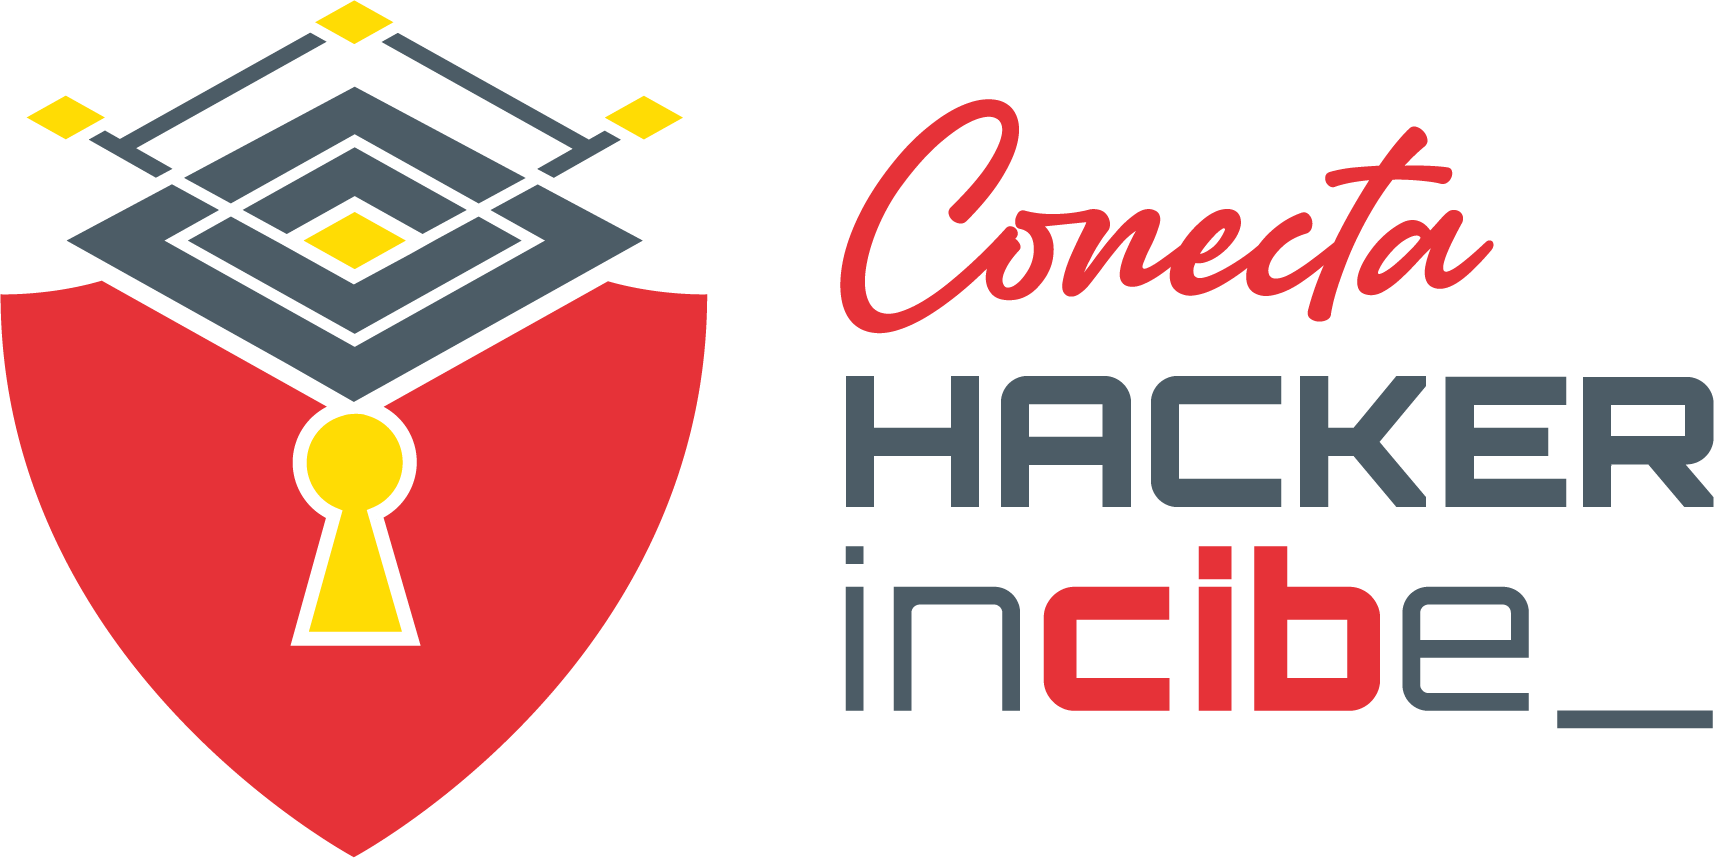 Sección Conecta Hacker